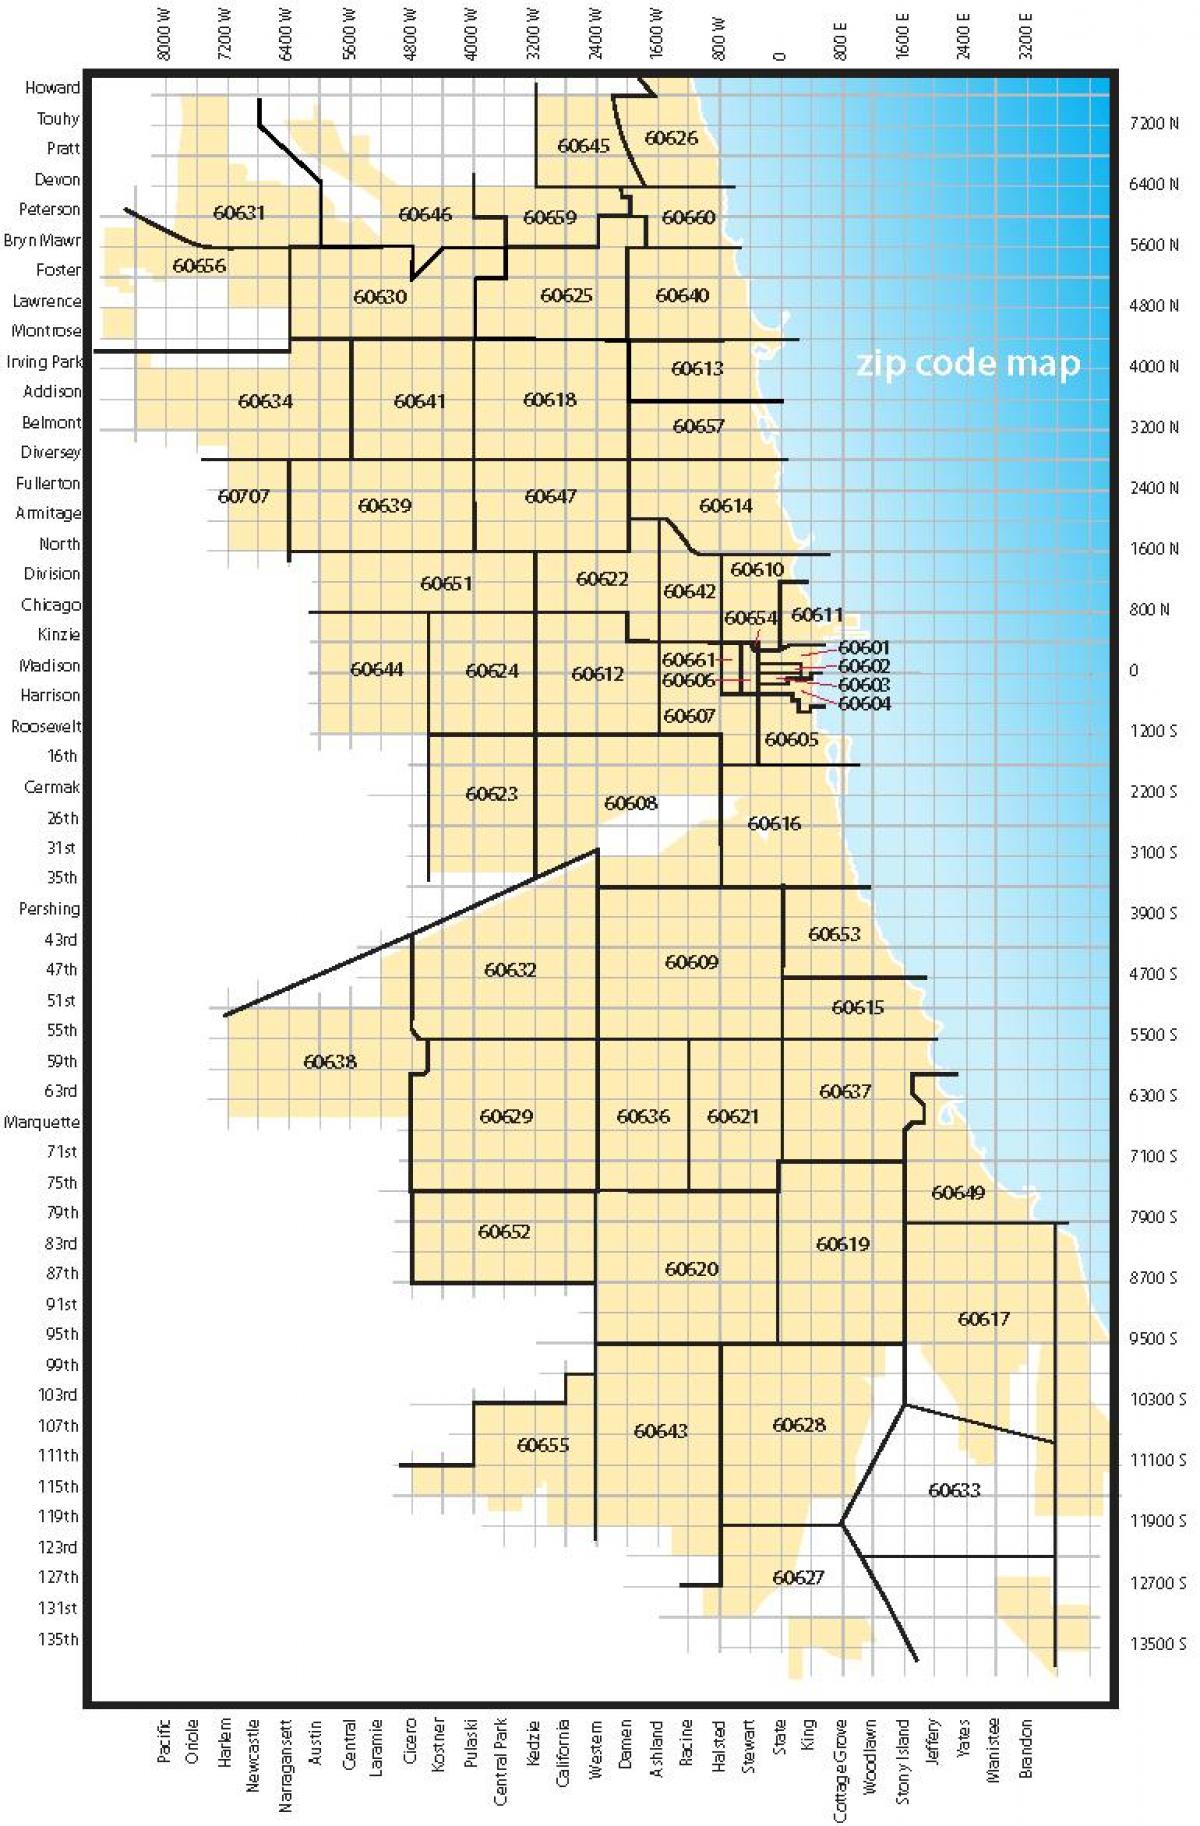 mapa de Chicago zip codes